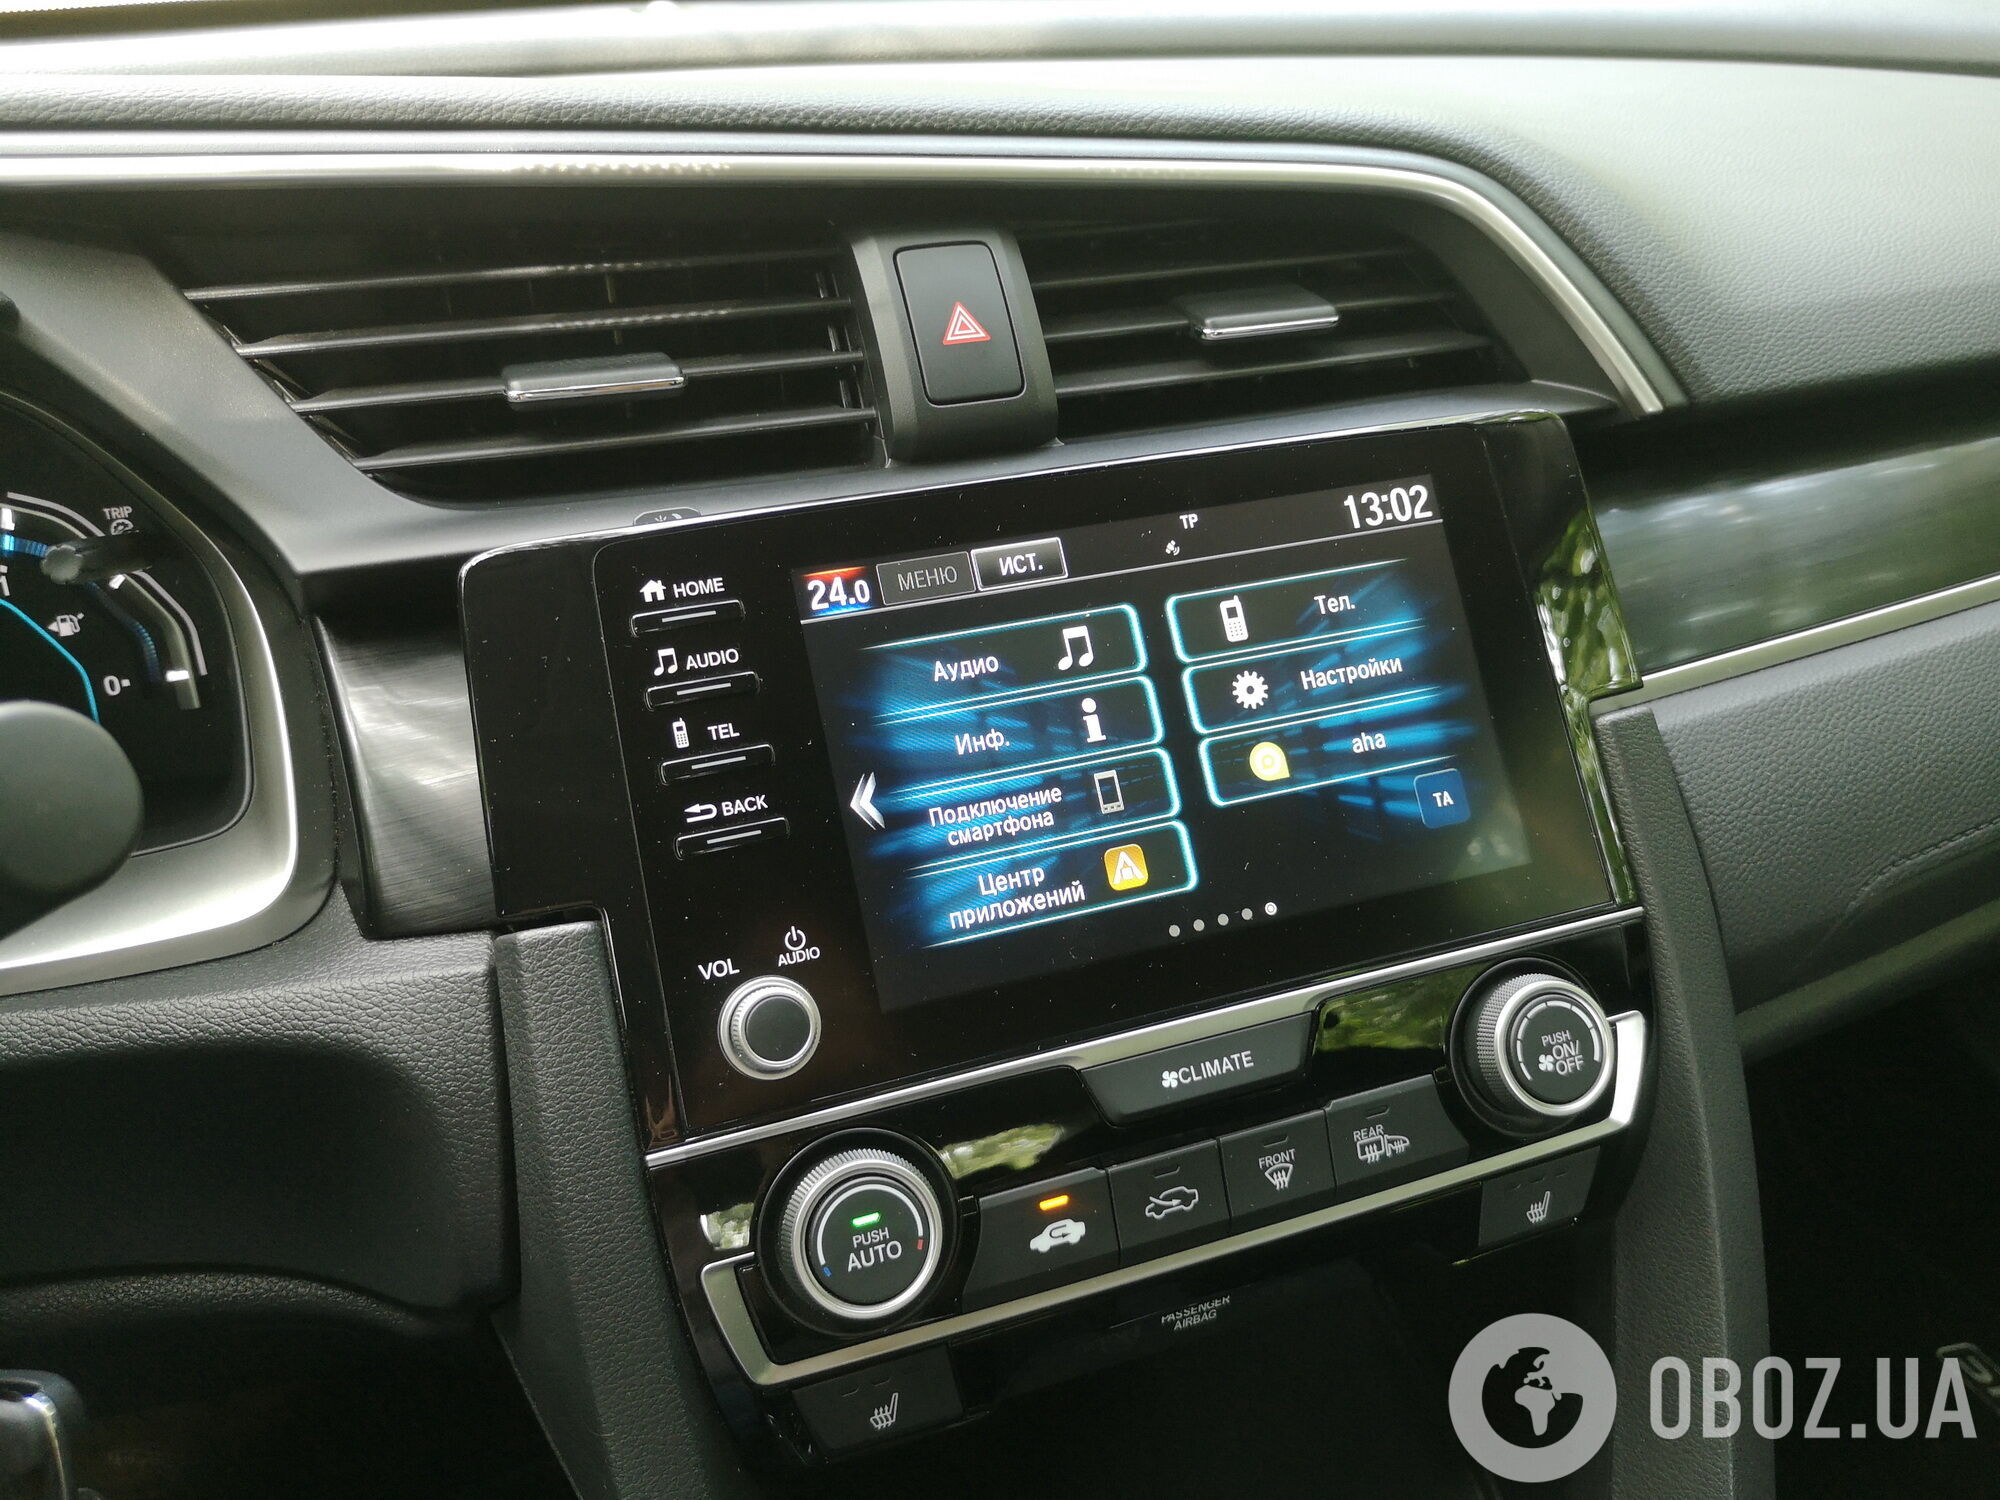 Новая информационно-развлекательная система оснащена 8-дюймовым сенсорным дисплеем и поддерживает Apple CarPlay и Android Auto